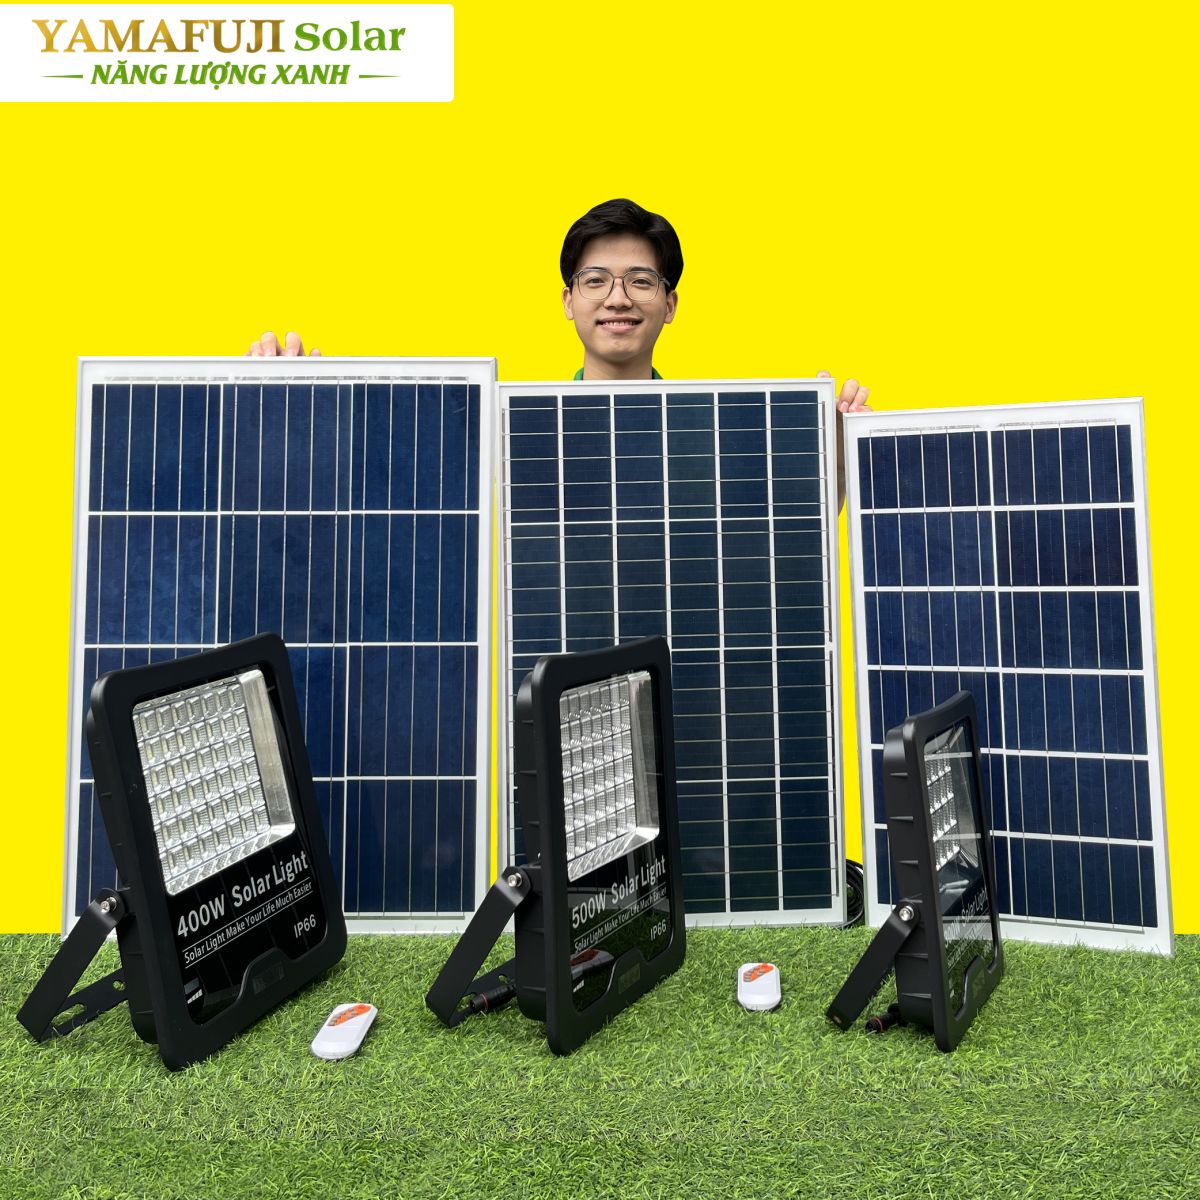 Đèn năng lượng mặt trời Yamafuji SFL02-300W chính hãng